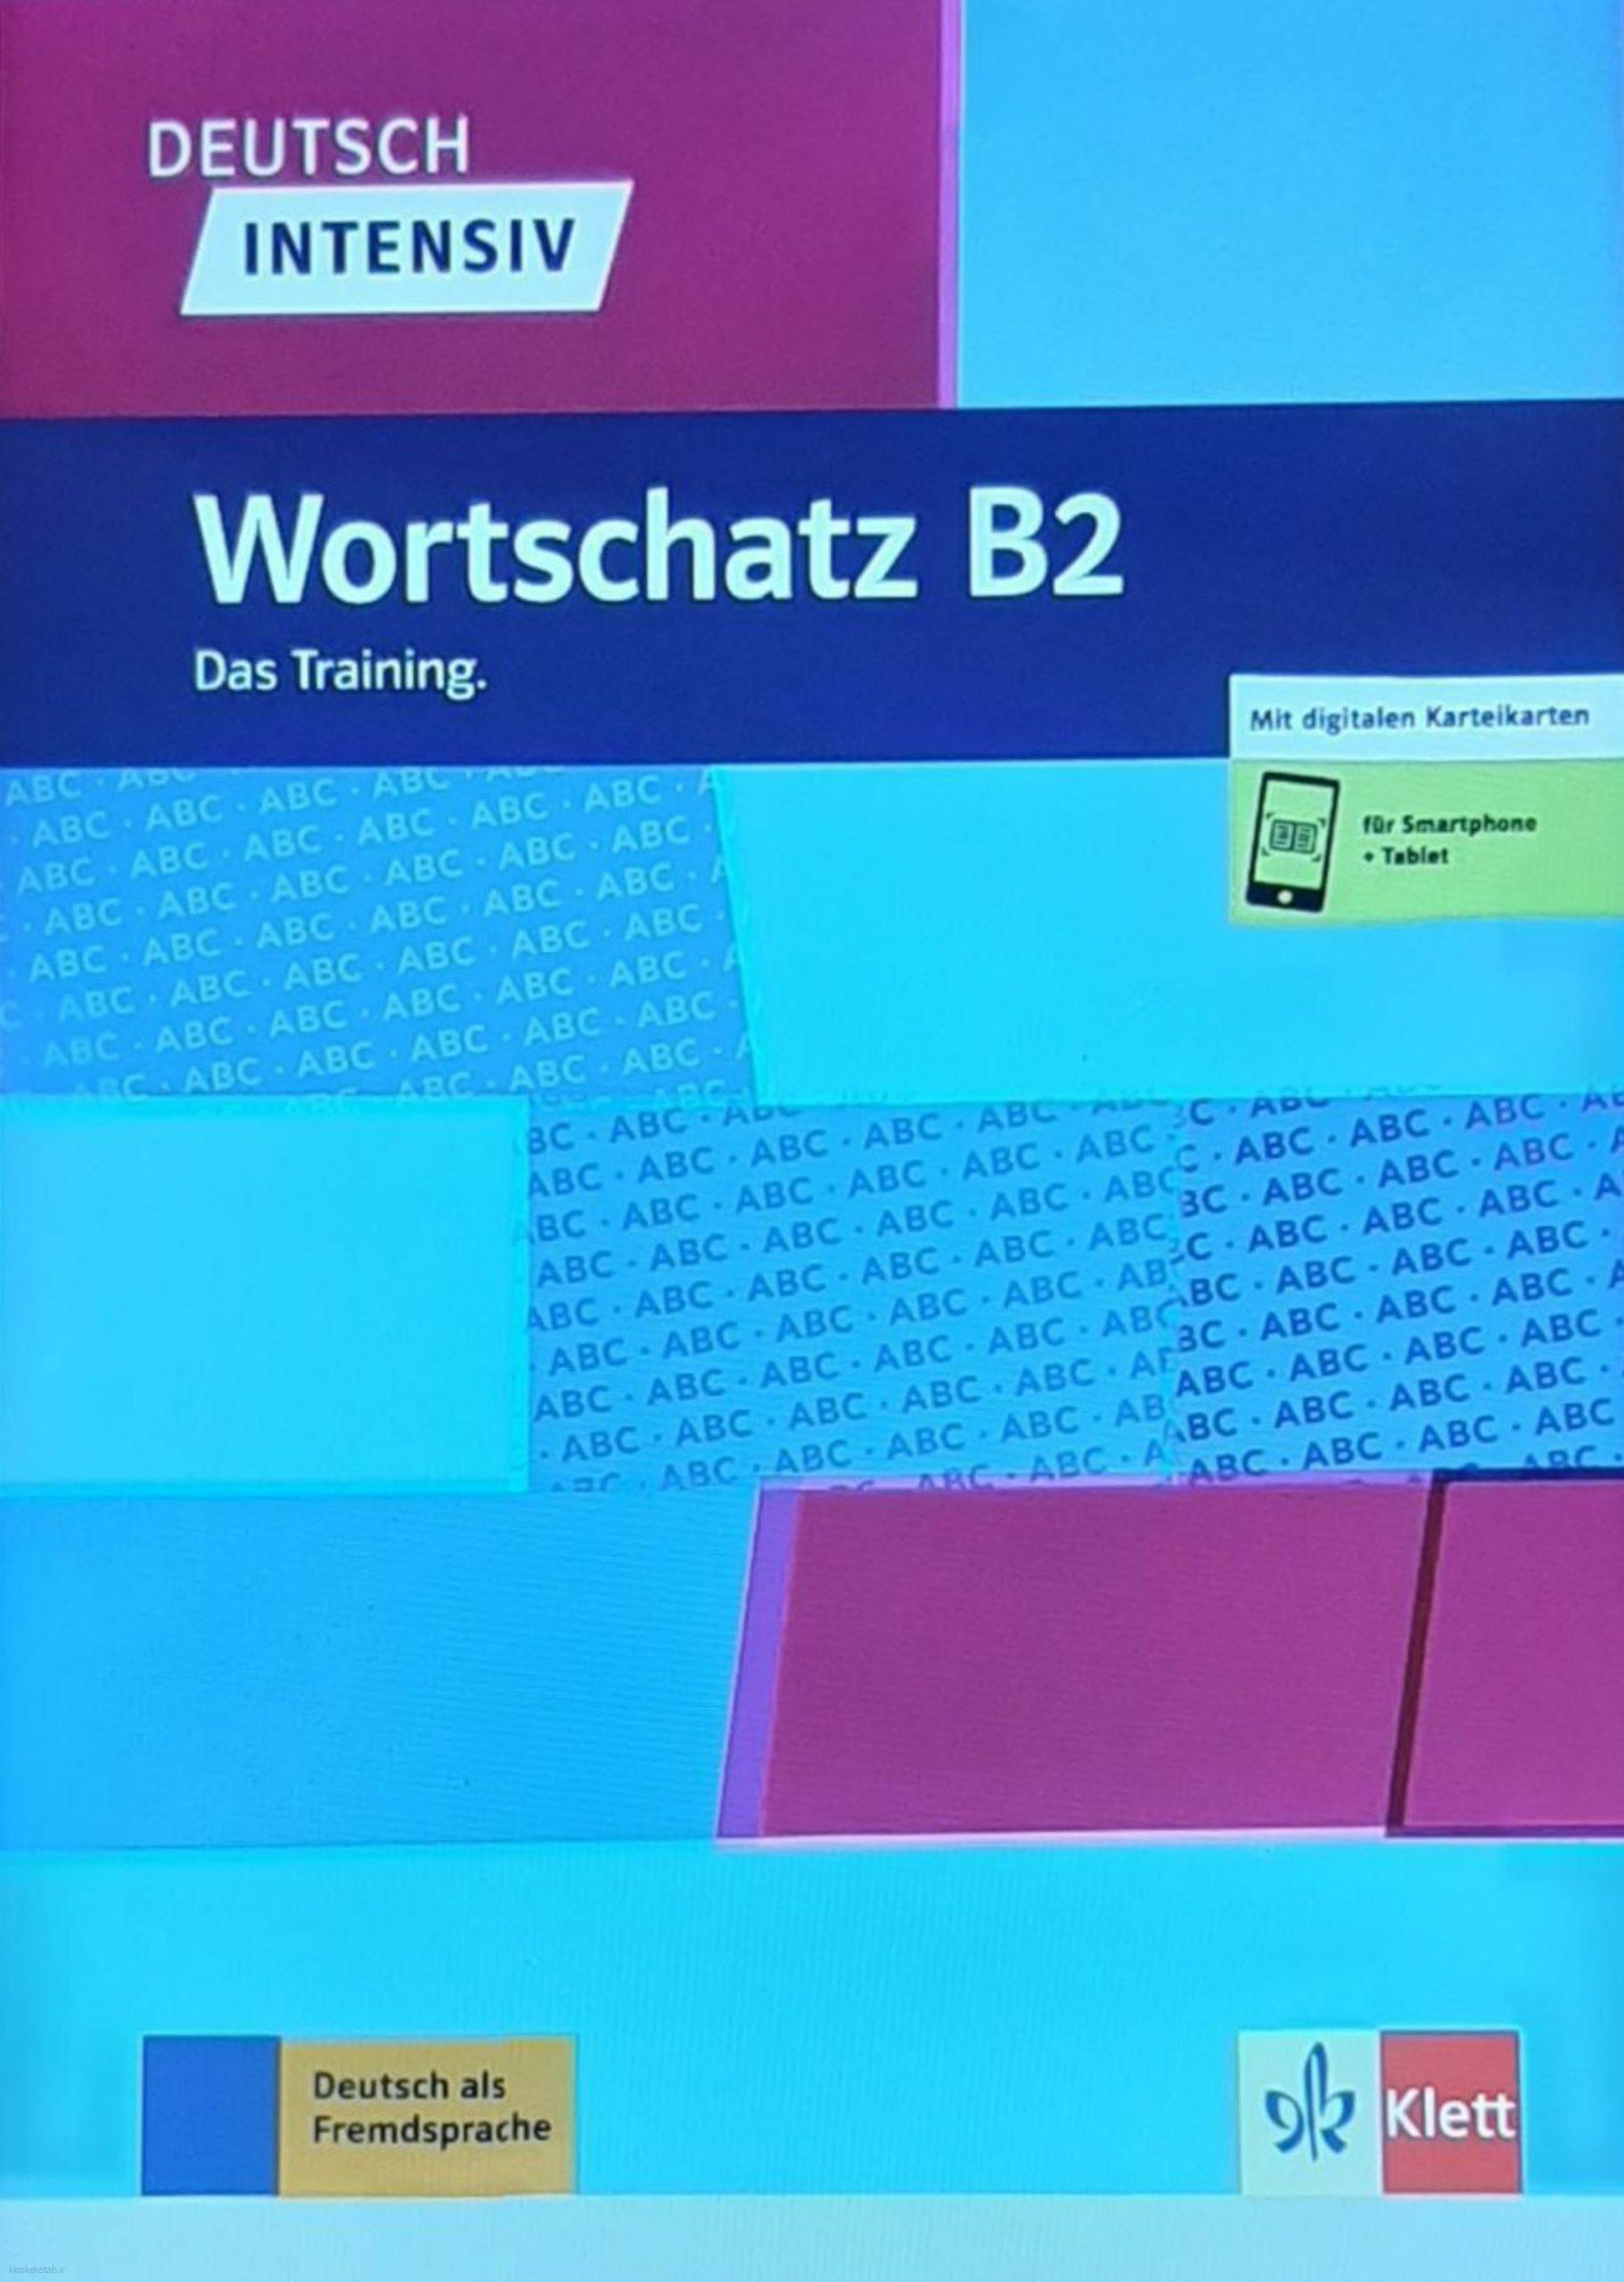 دانلود کتاب آلمانیwortschatz b2